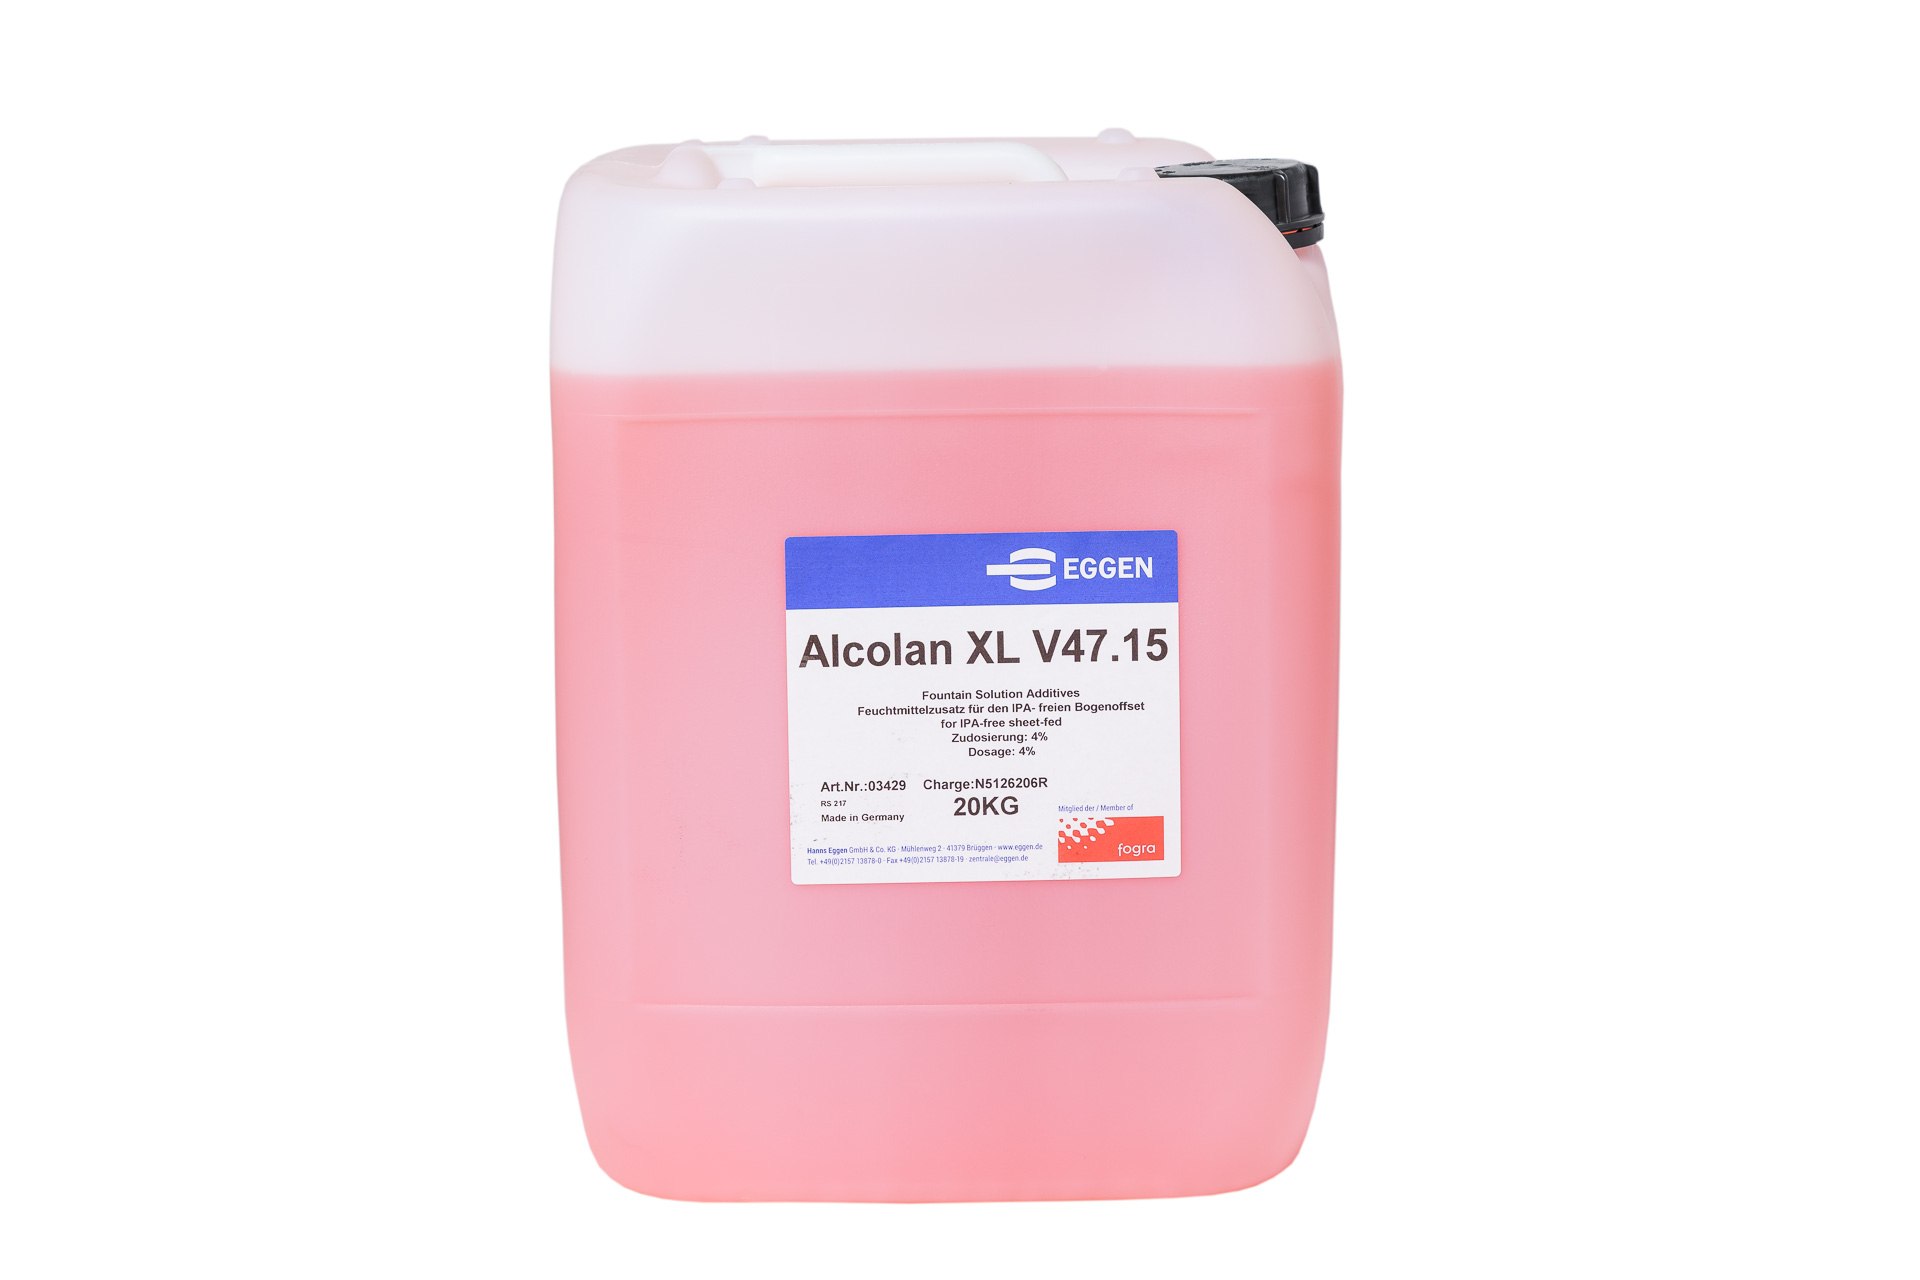 Alcolan XL V47.15